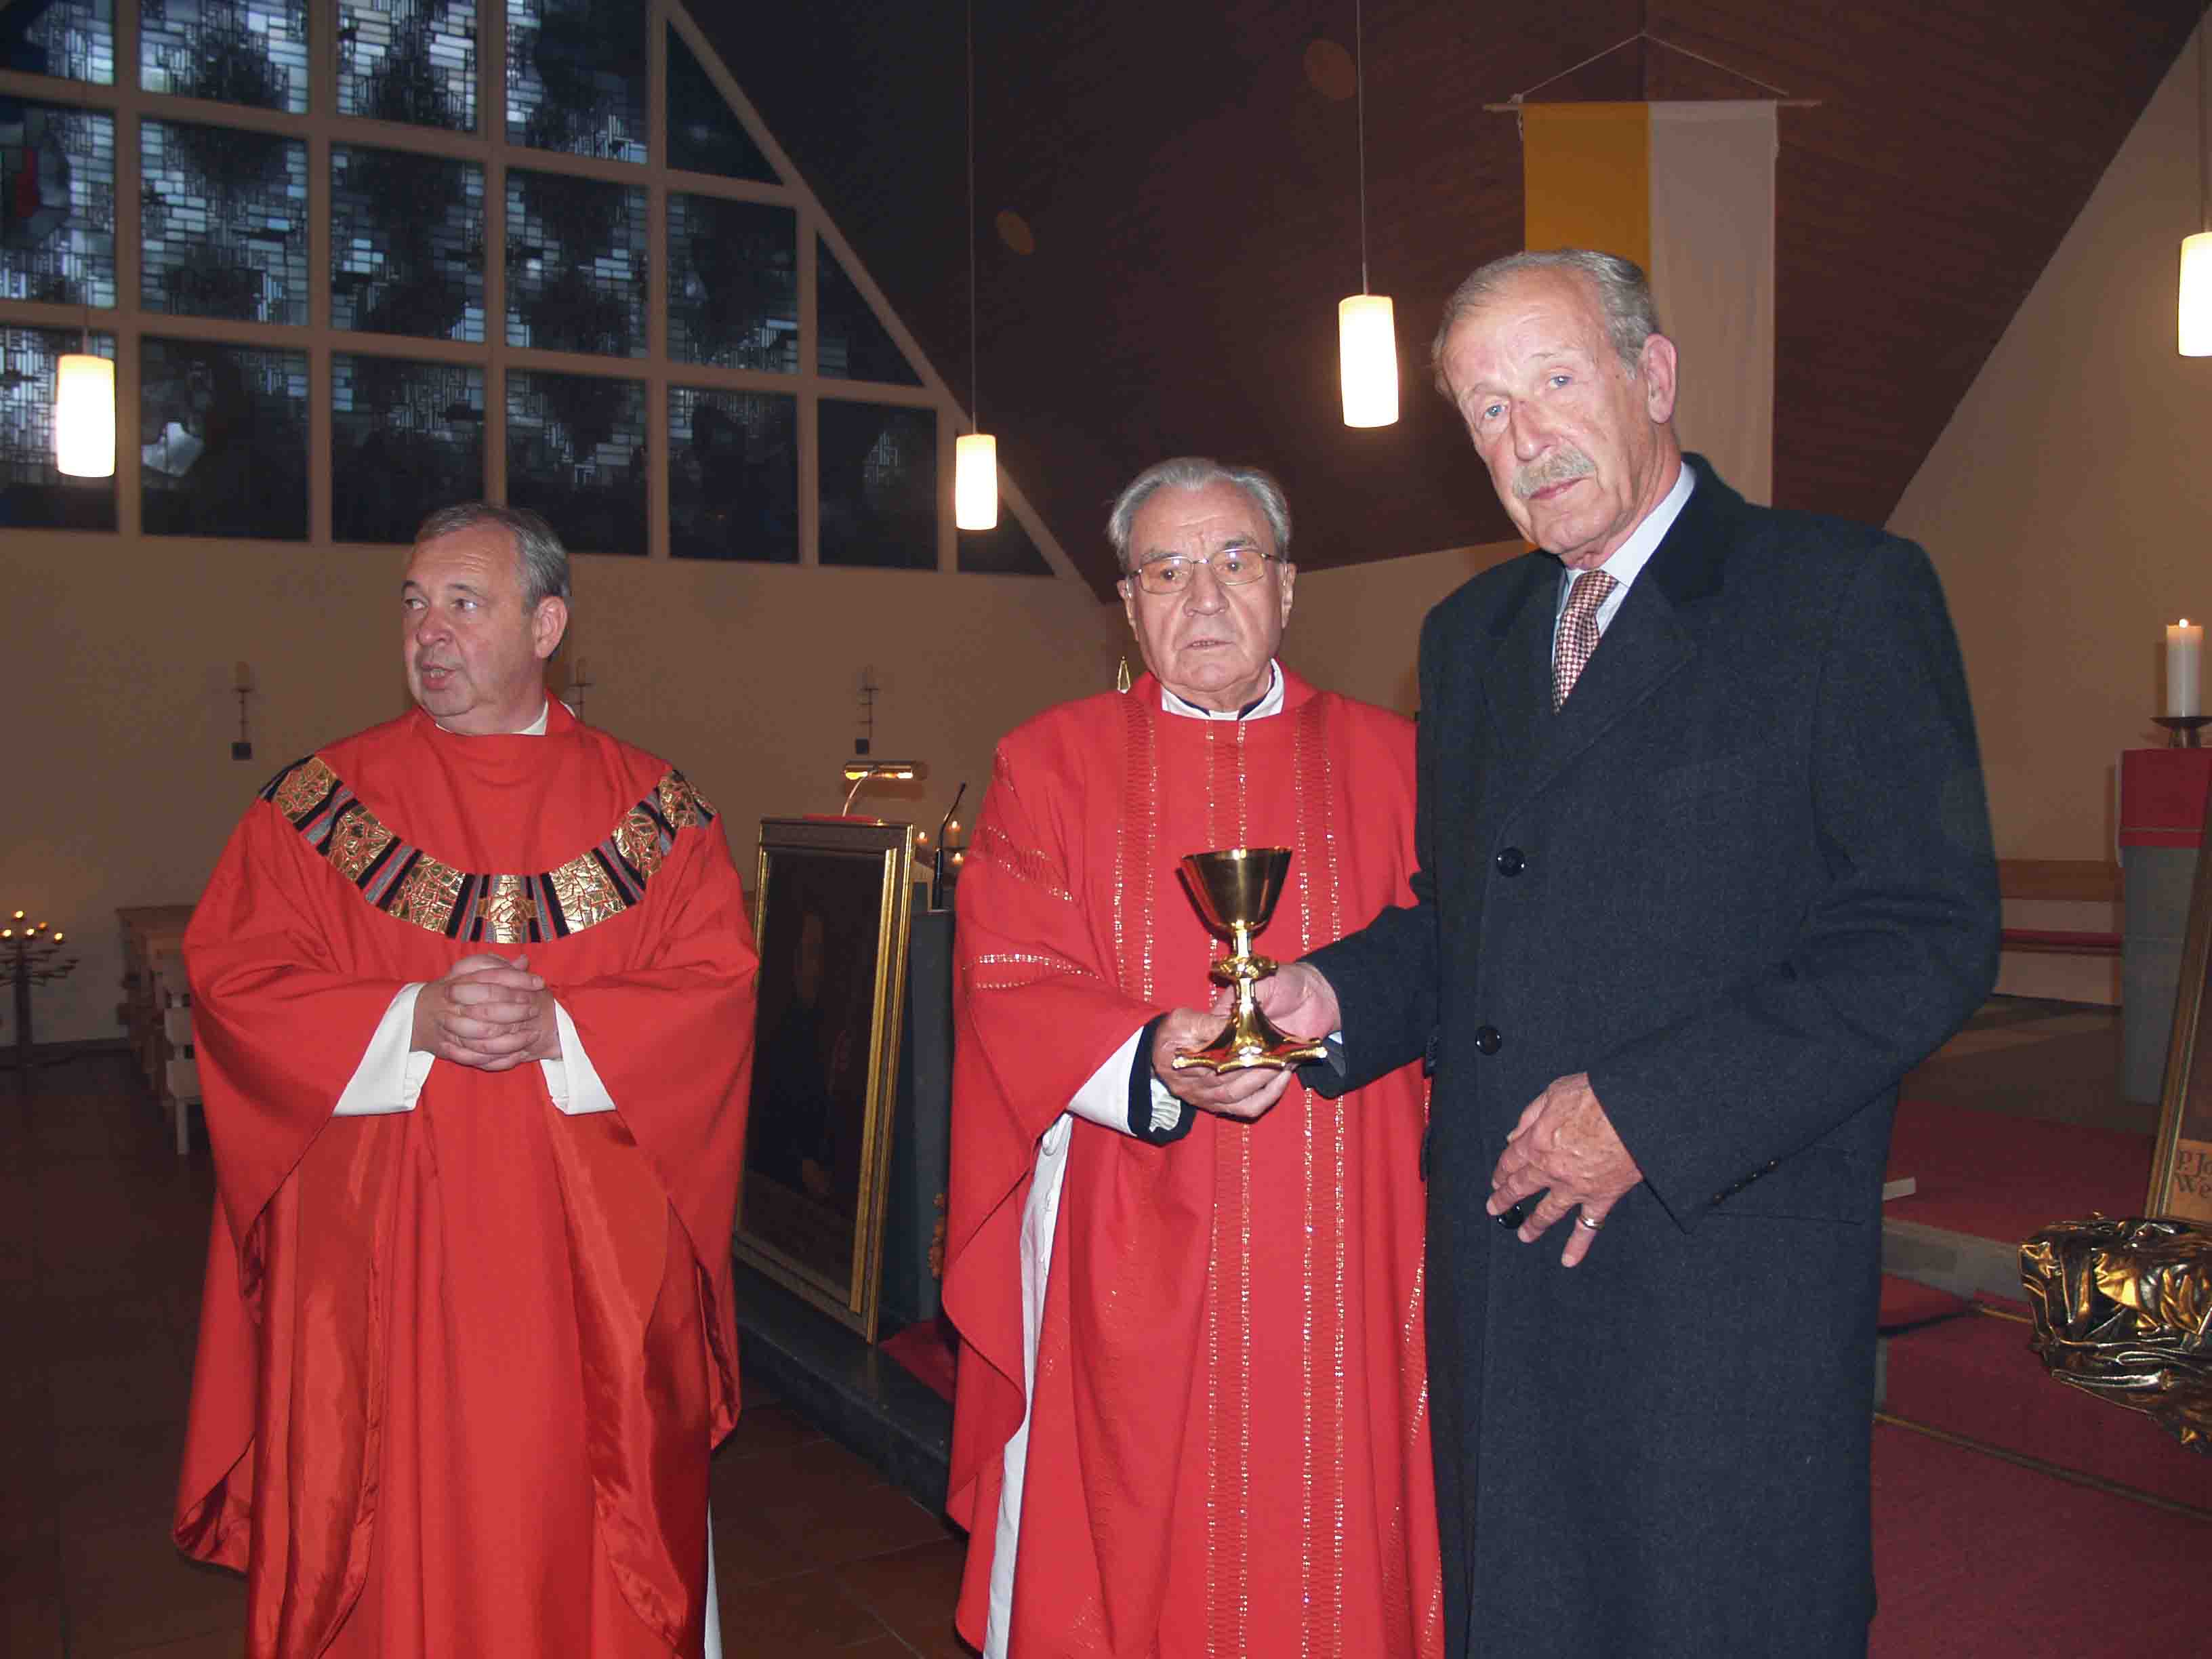 von links nach rechts: Pfarrer Wolfgang Fabian aus Warburg,  Probst Clemens Burchhardt aus Verden (Aller), Freiherr van Heereman